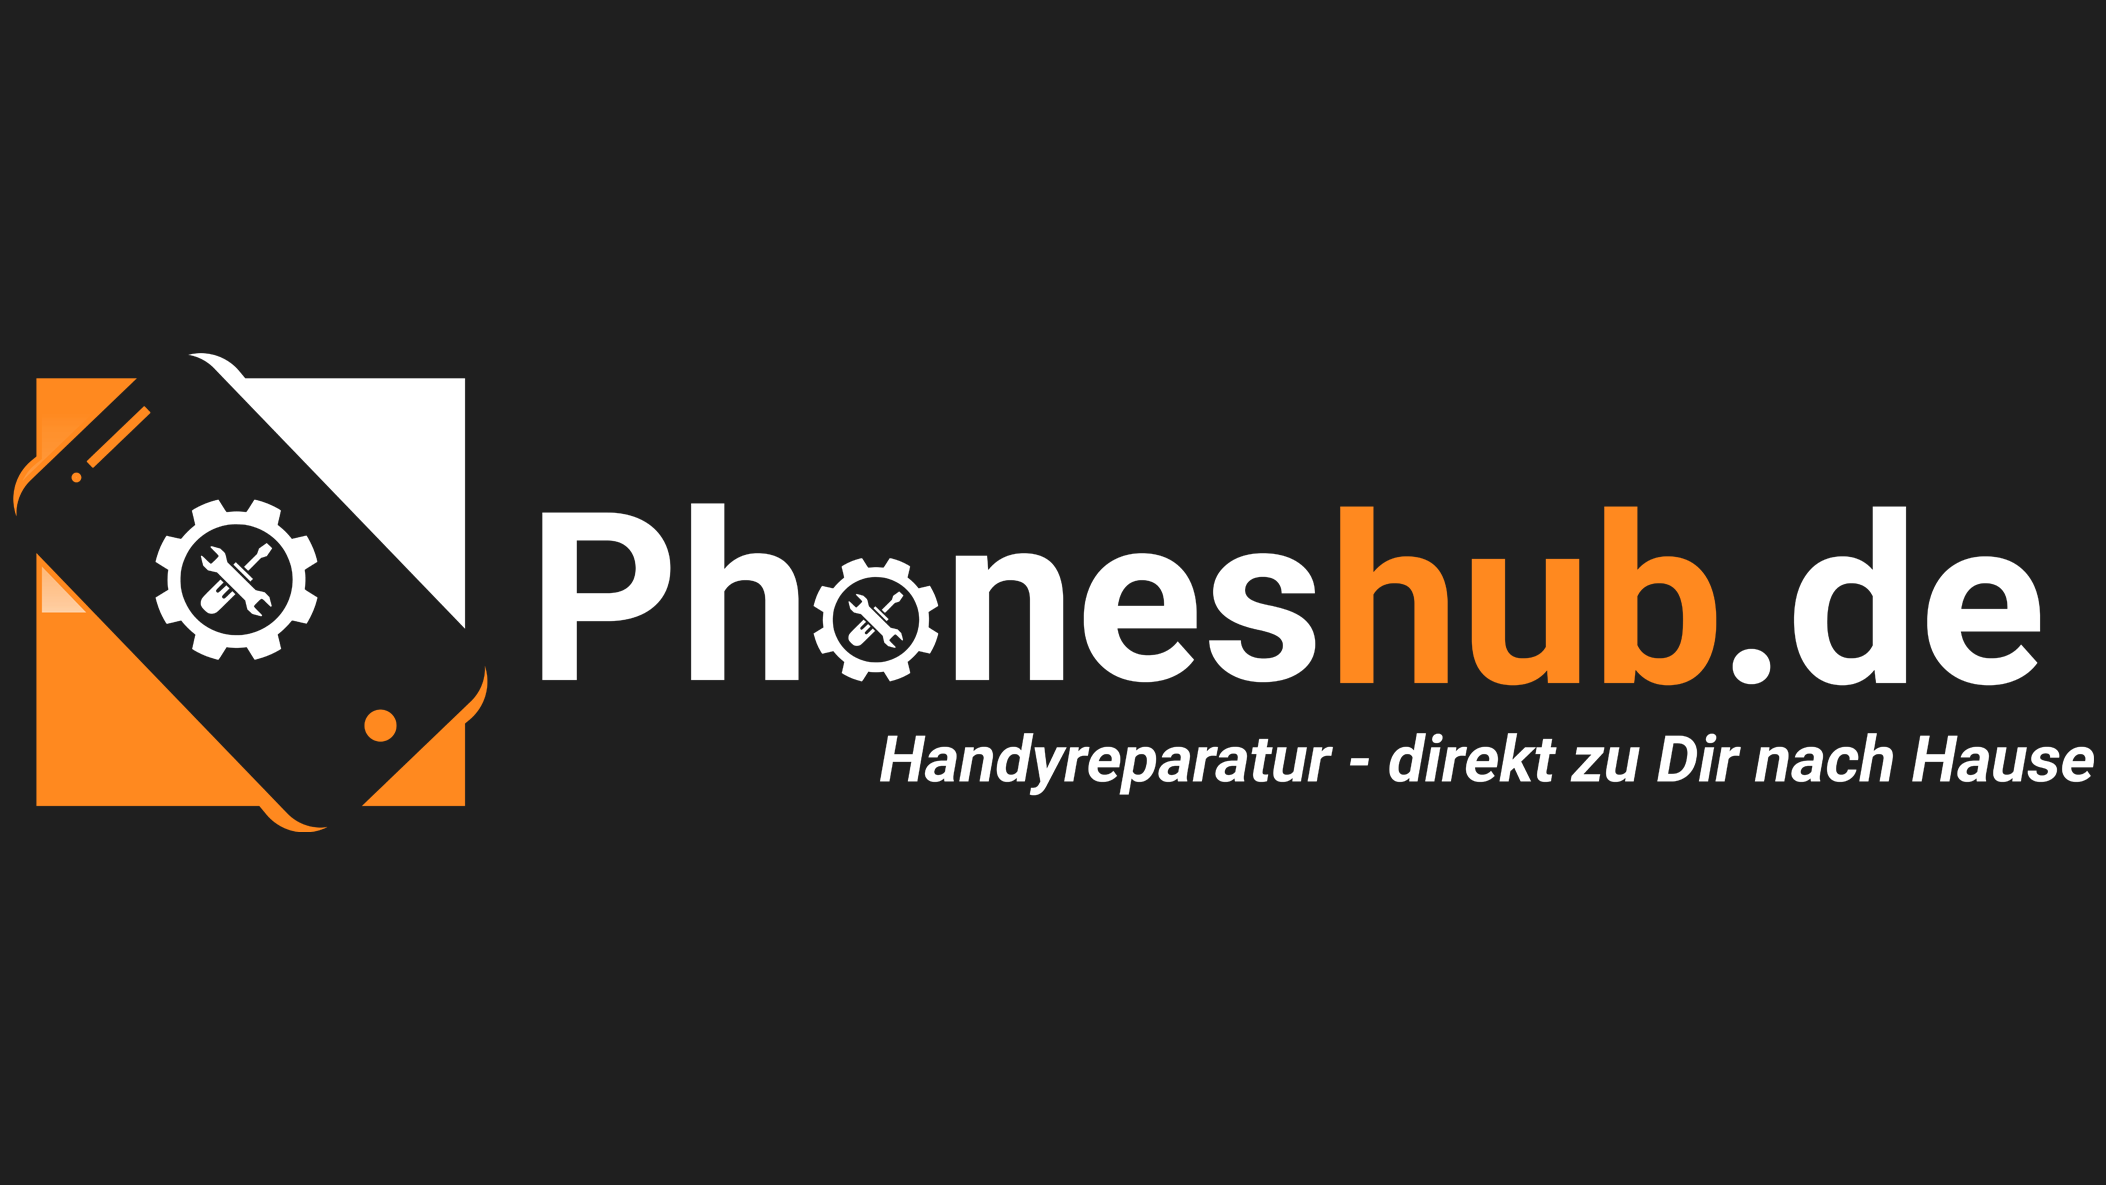 Bilder phoneshub - Handyreparatur direkt zu Dir nach Hause